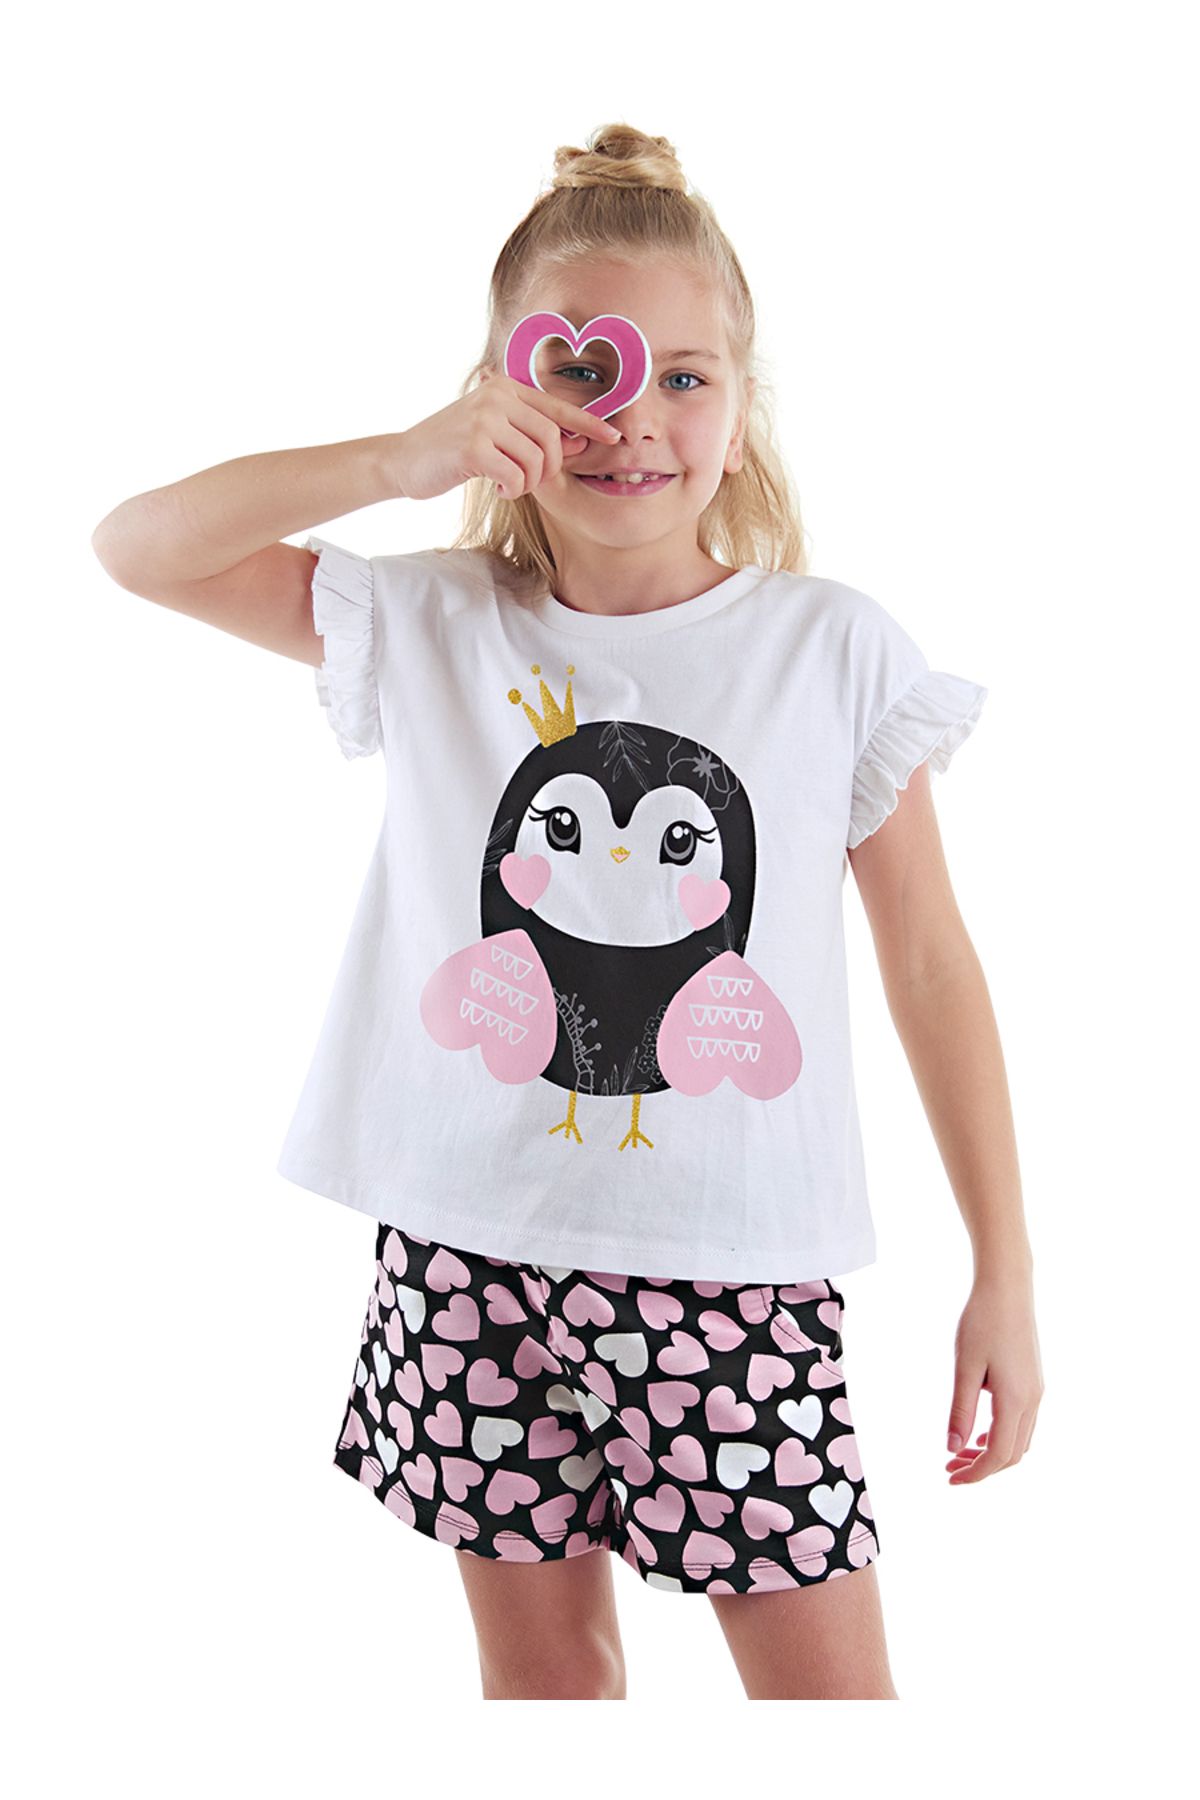 Denokids Tatlı Baykuş Kız Çocuk T-shirt Şort Takım